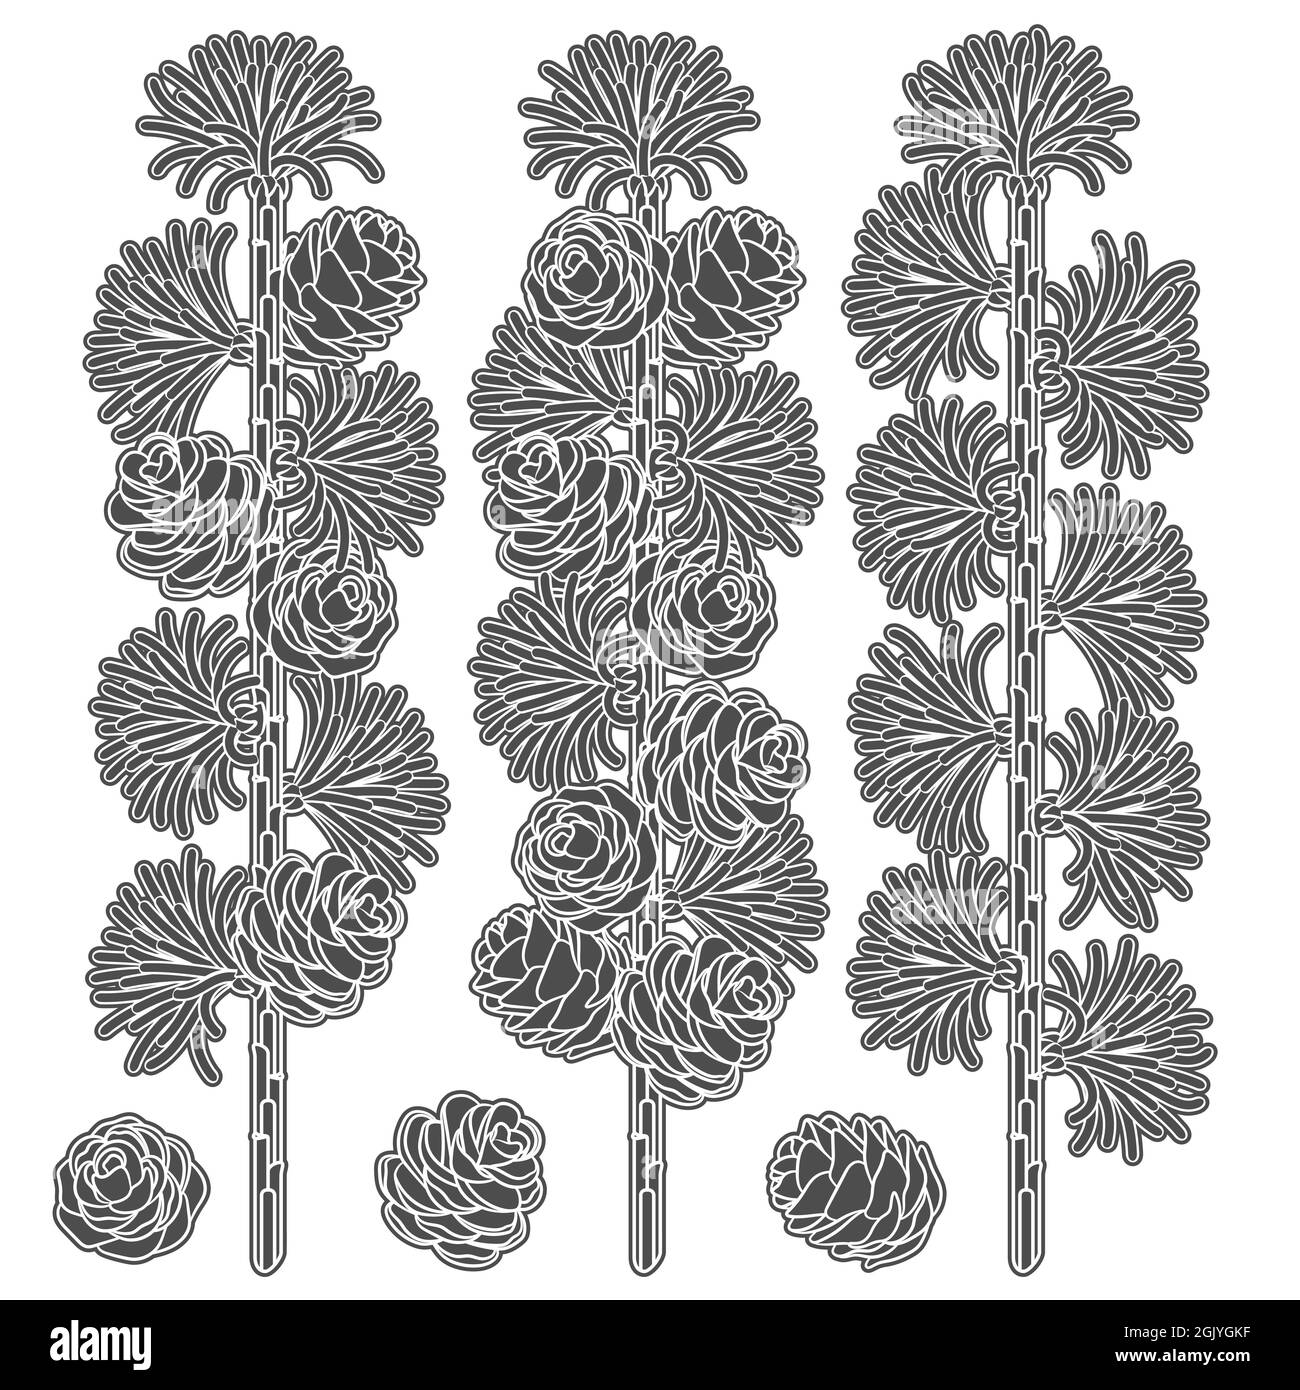 Set von Schwarz-Weiß-Bildern von Lärchenzweigen und Kegeln. Isolierte Vektorobjekte auf weißem Hintergrund. Stock Vektor